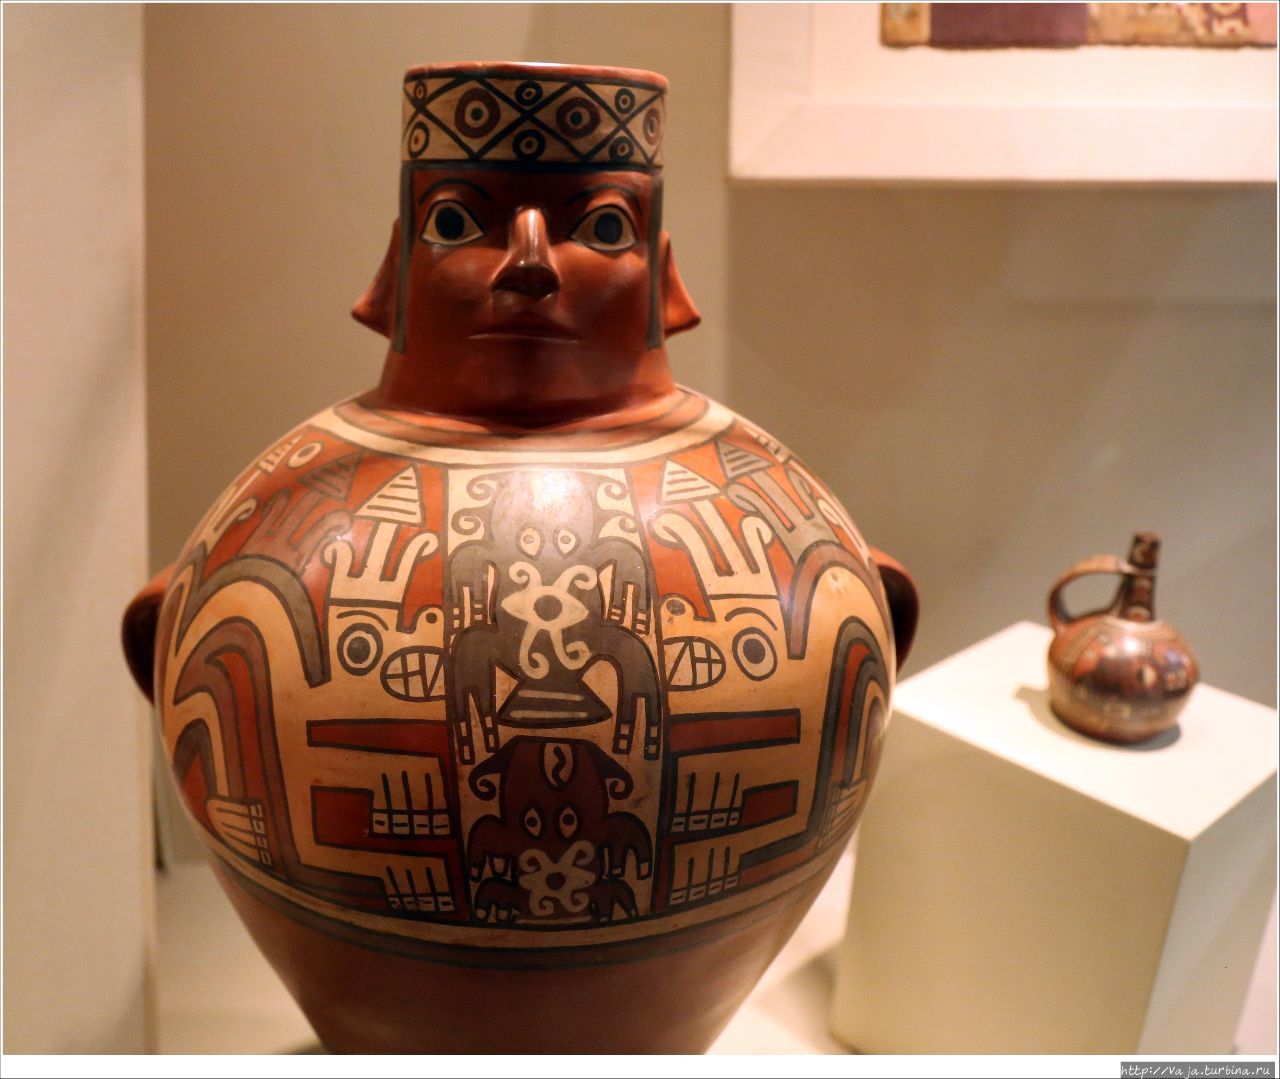 Археологический, антропологический и исторический музей Перу Лима, Перу